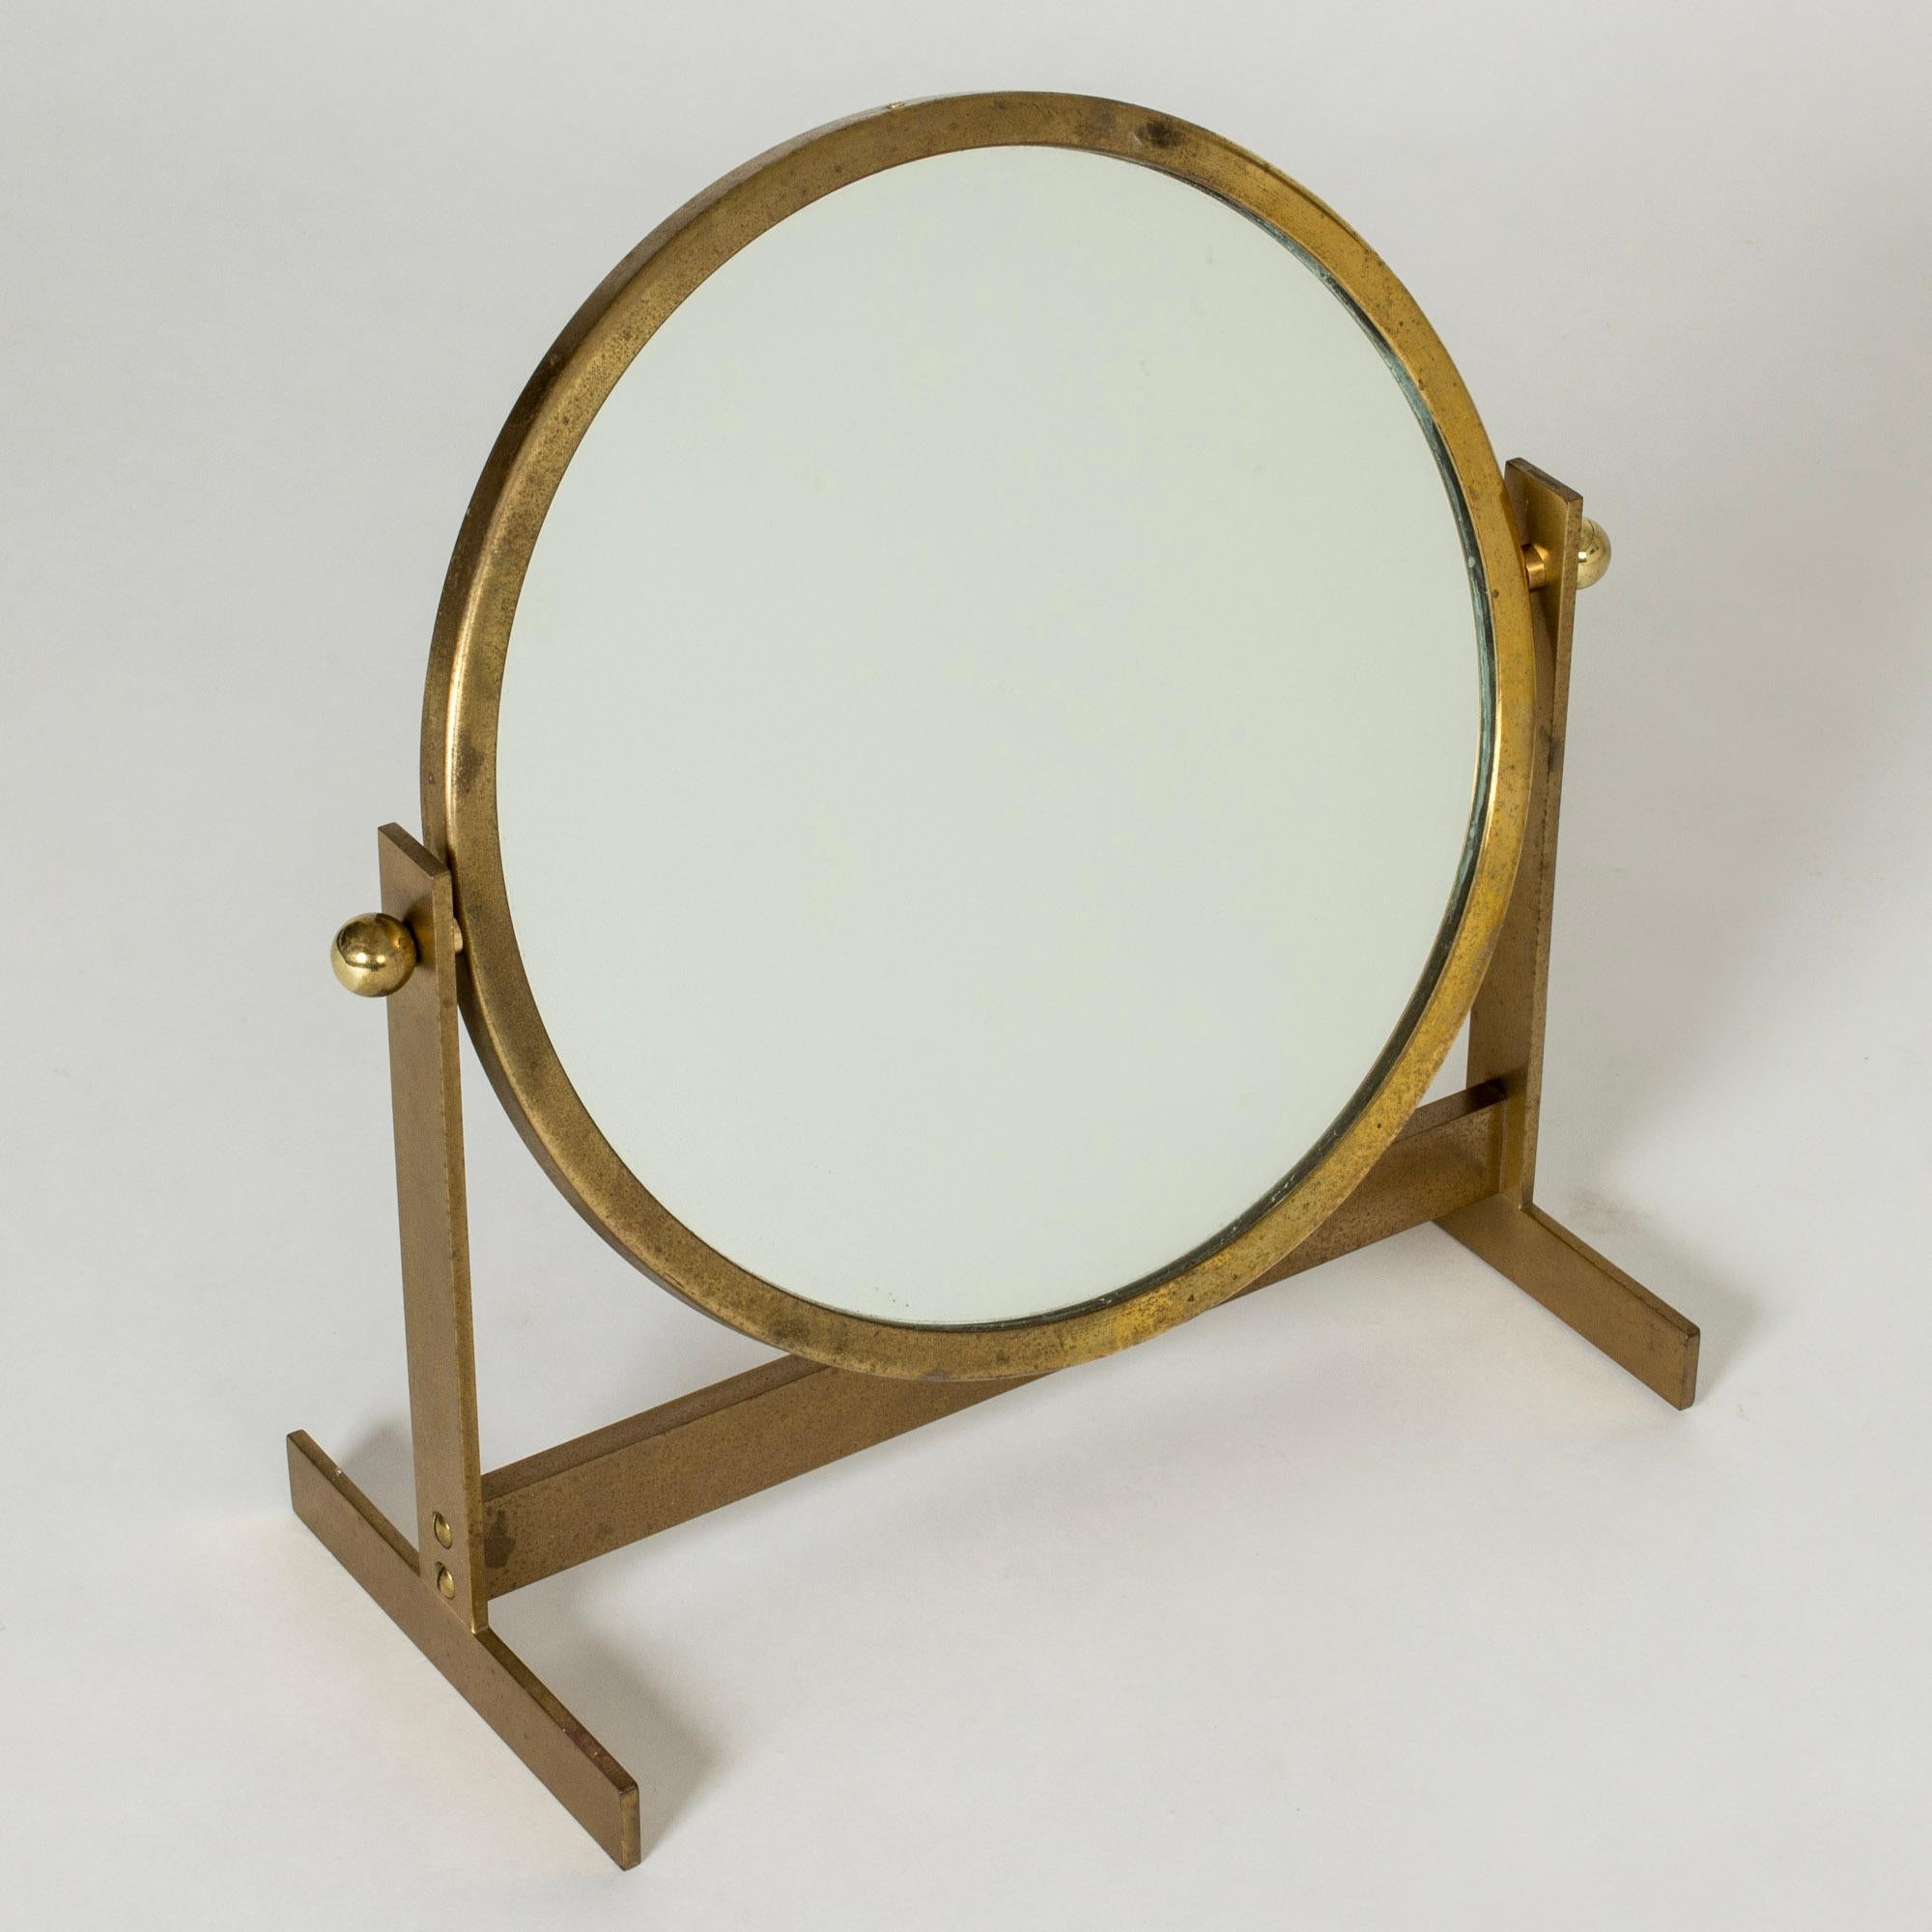 Elegant miroir de table en laiton de HI-gruppen, de forme ronde dans une base stricte.